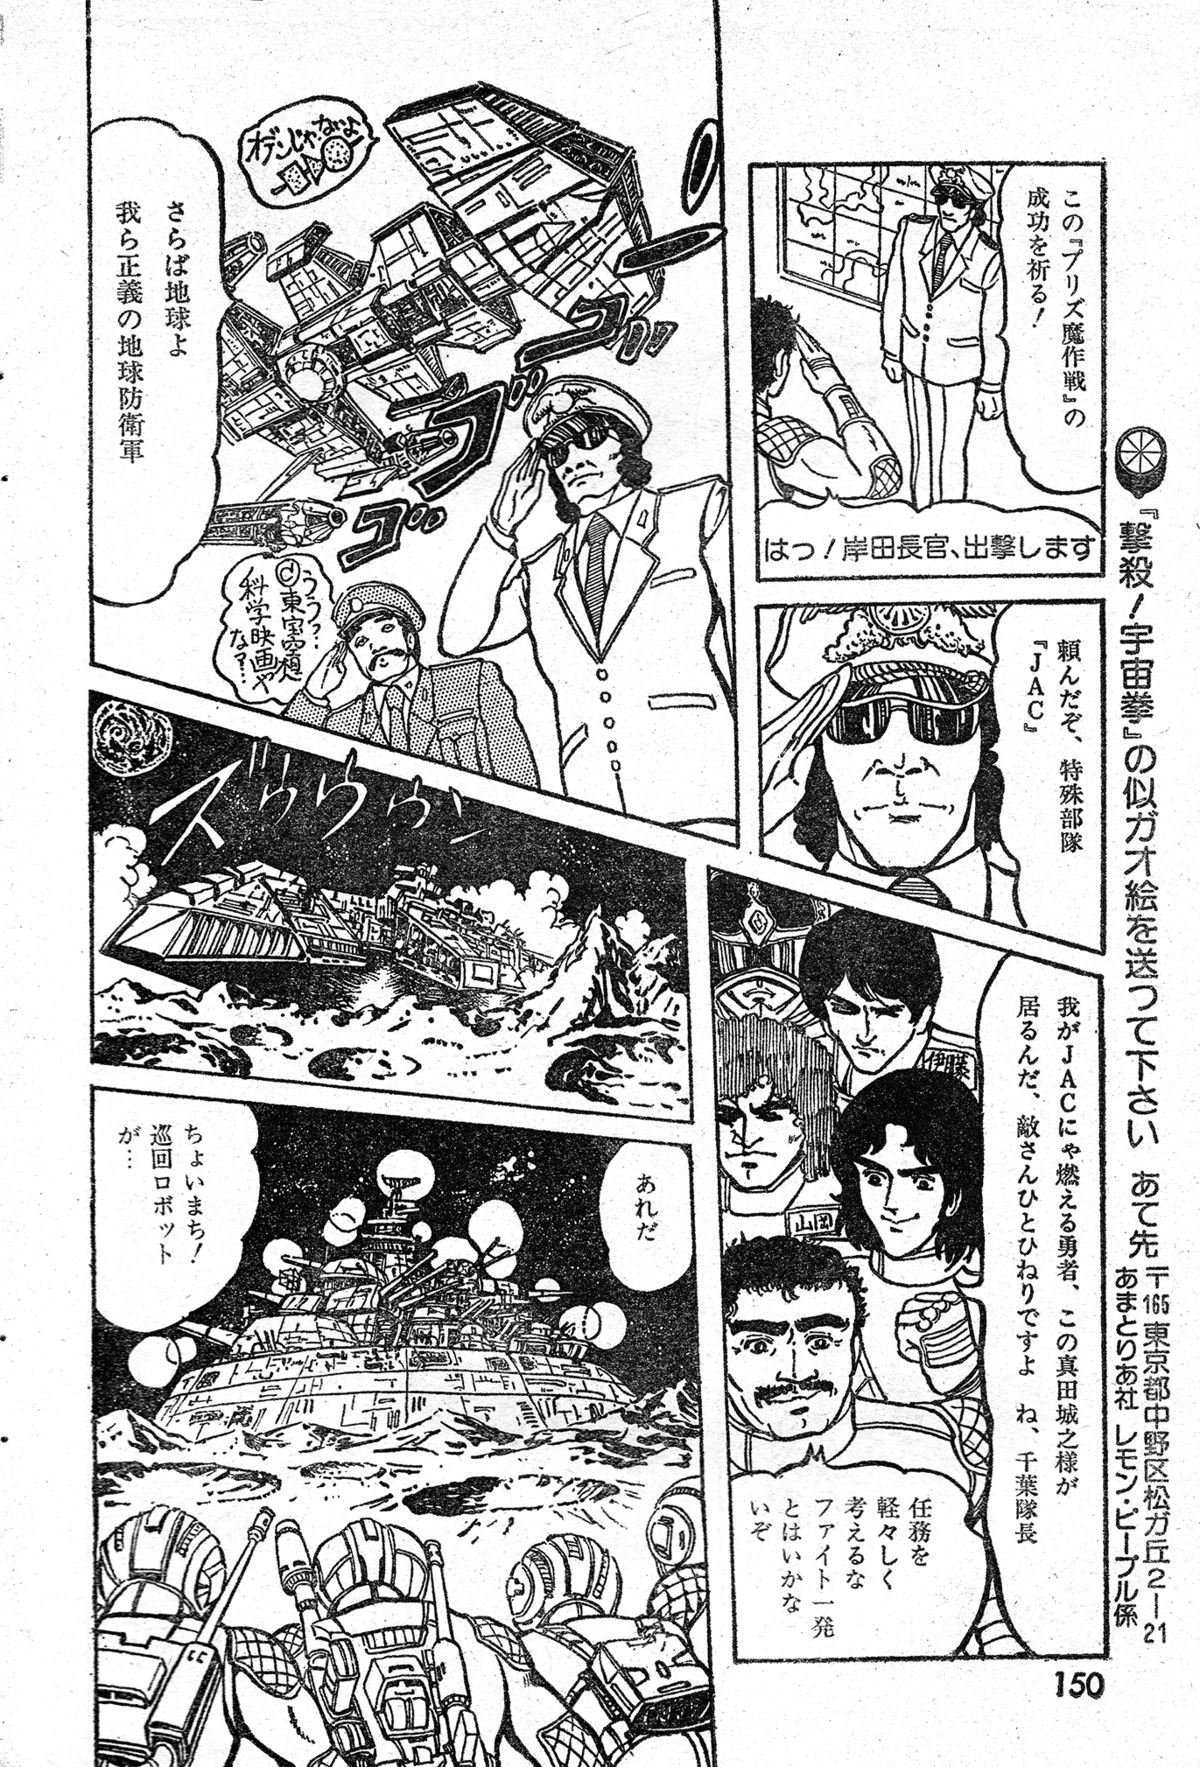 [破李拳竜] 撃殺!宇宙拳 第三章 (レモンピープル #4, 1982年4月)